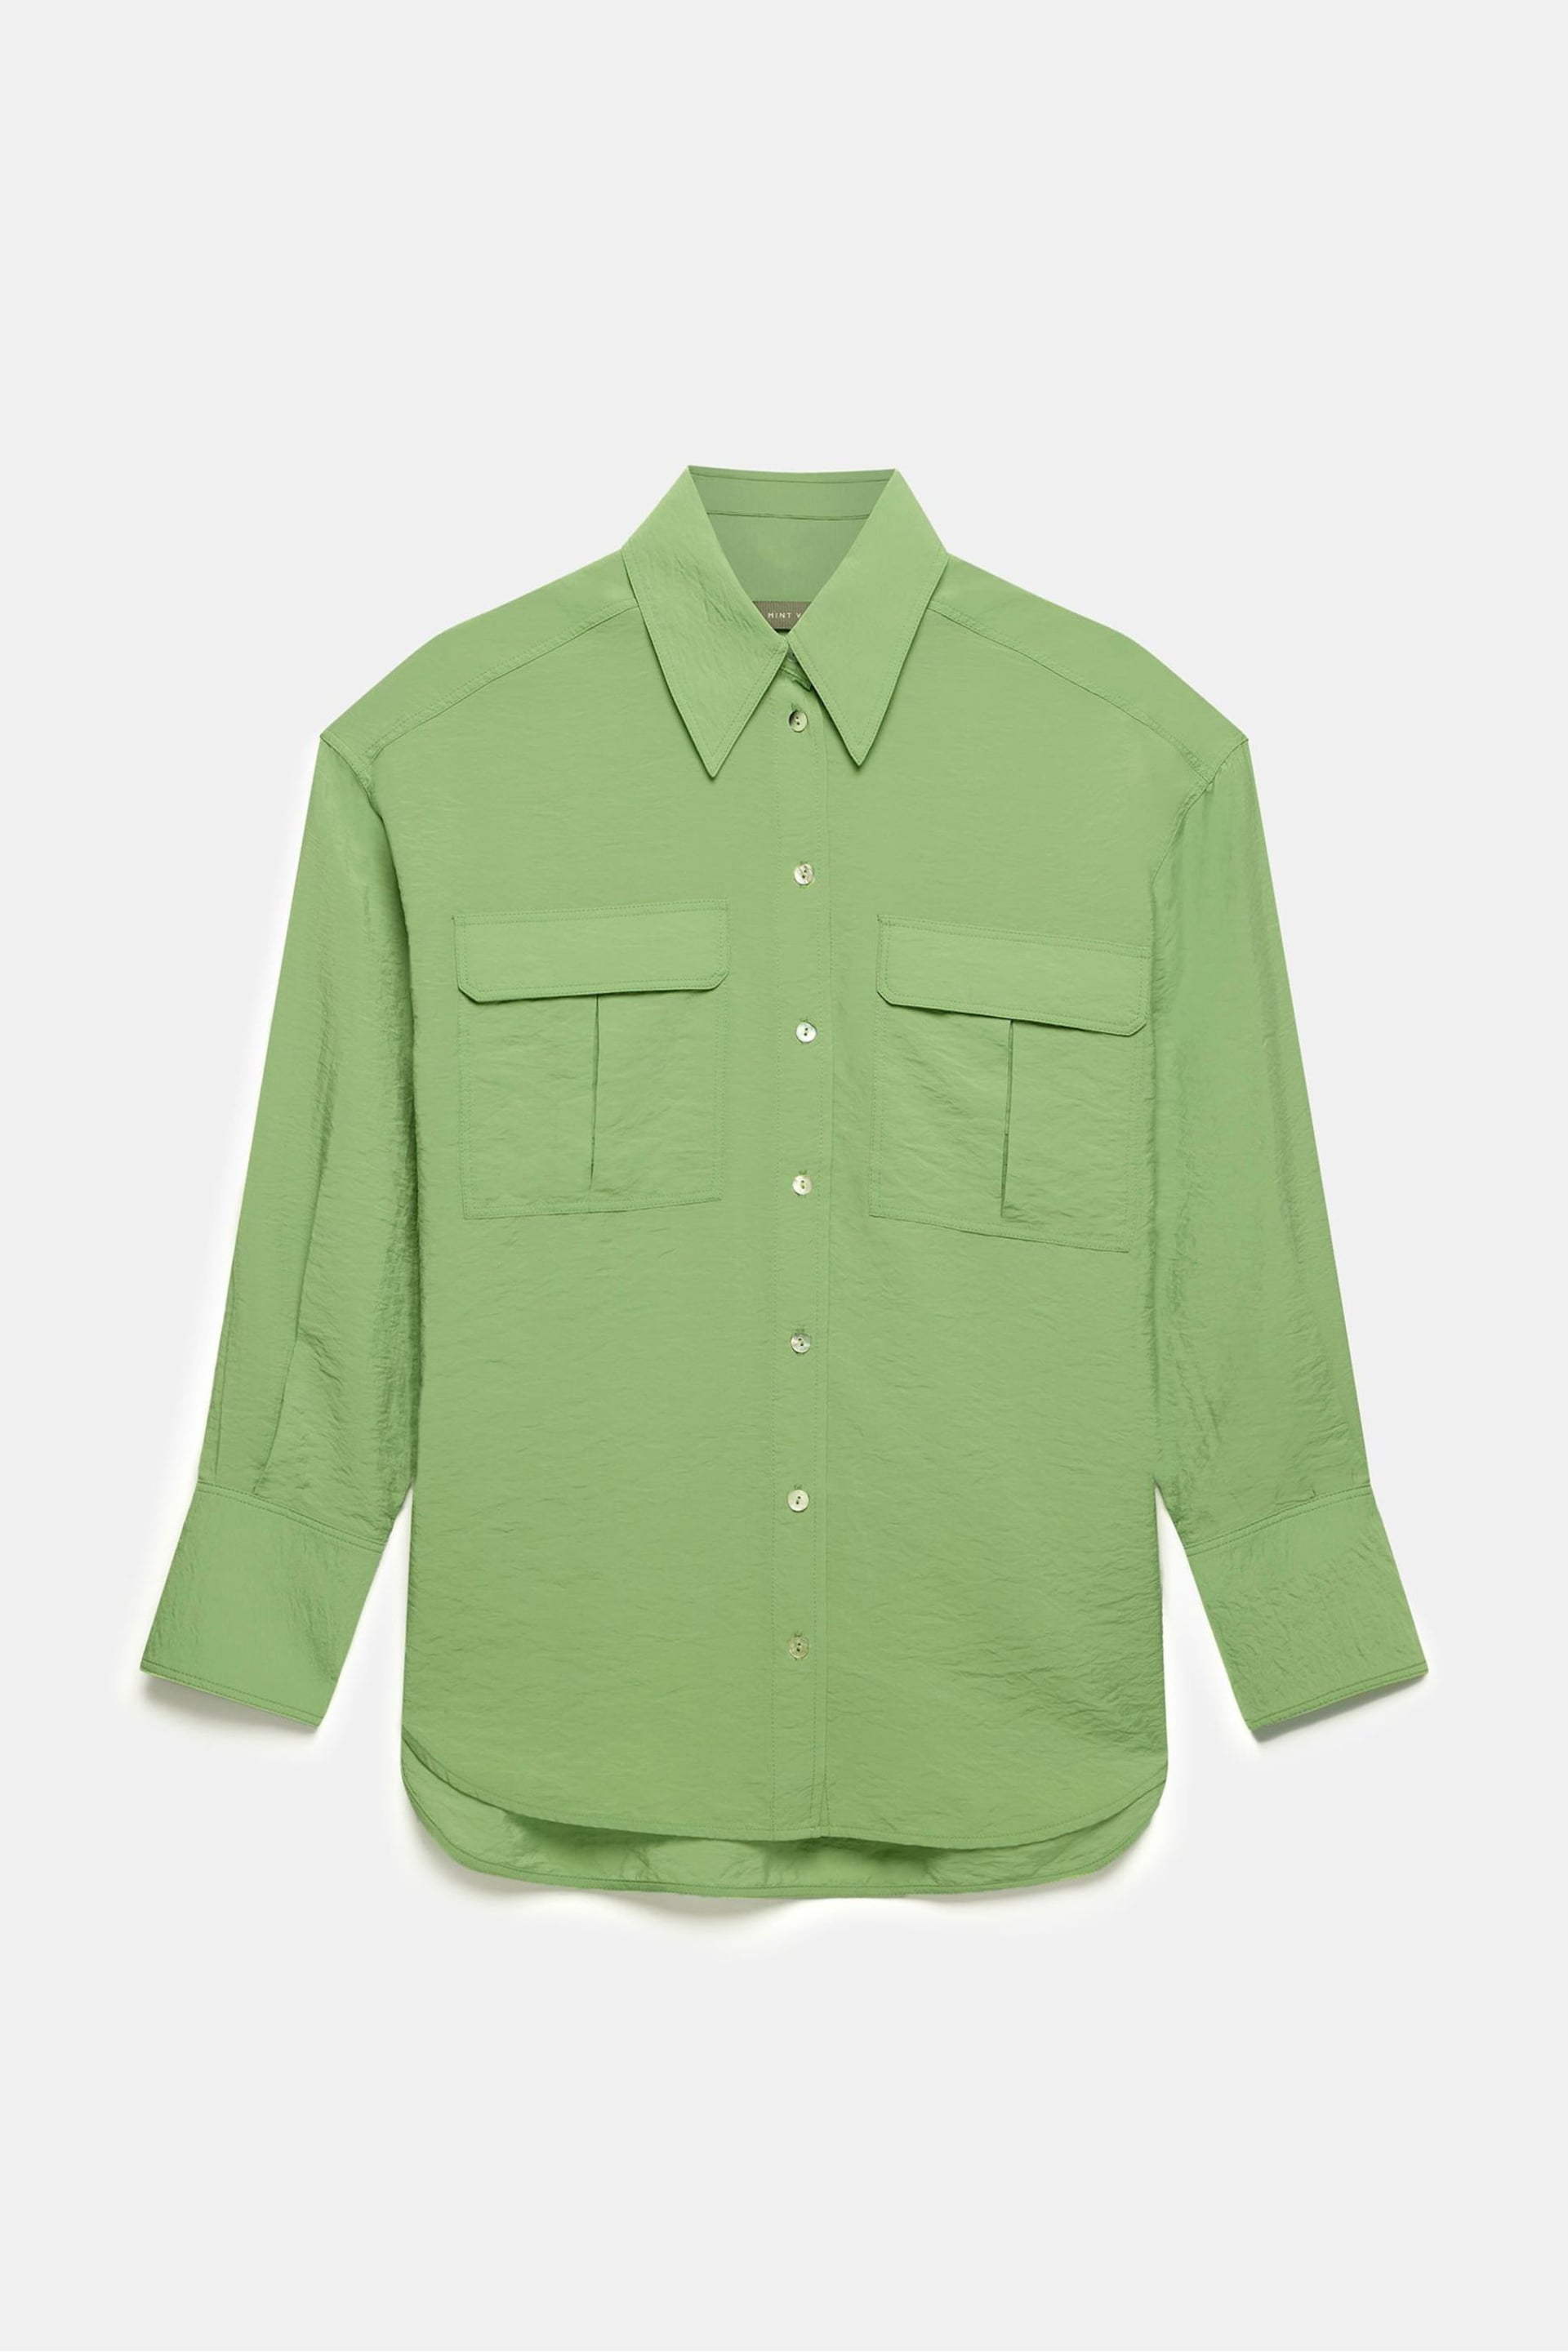 Mint Velvet Green Green Utility Detail Shirt - Image 3 of 4